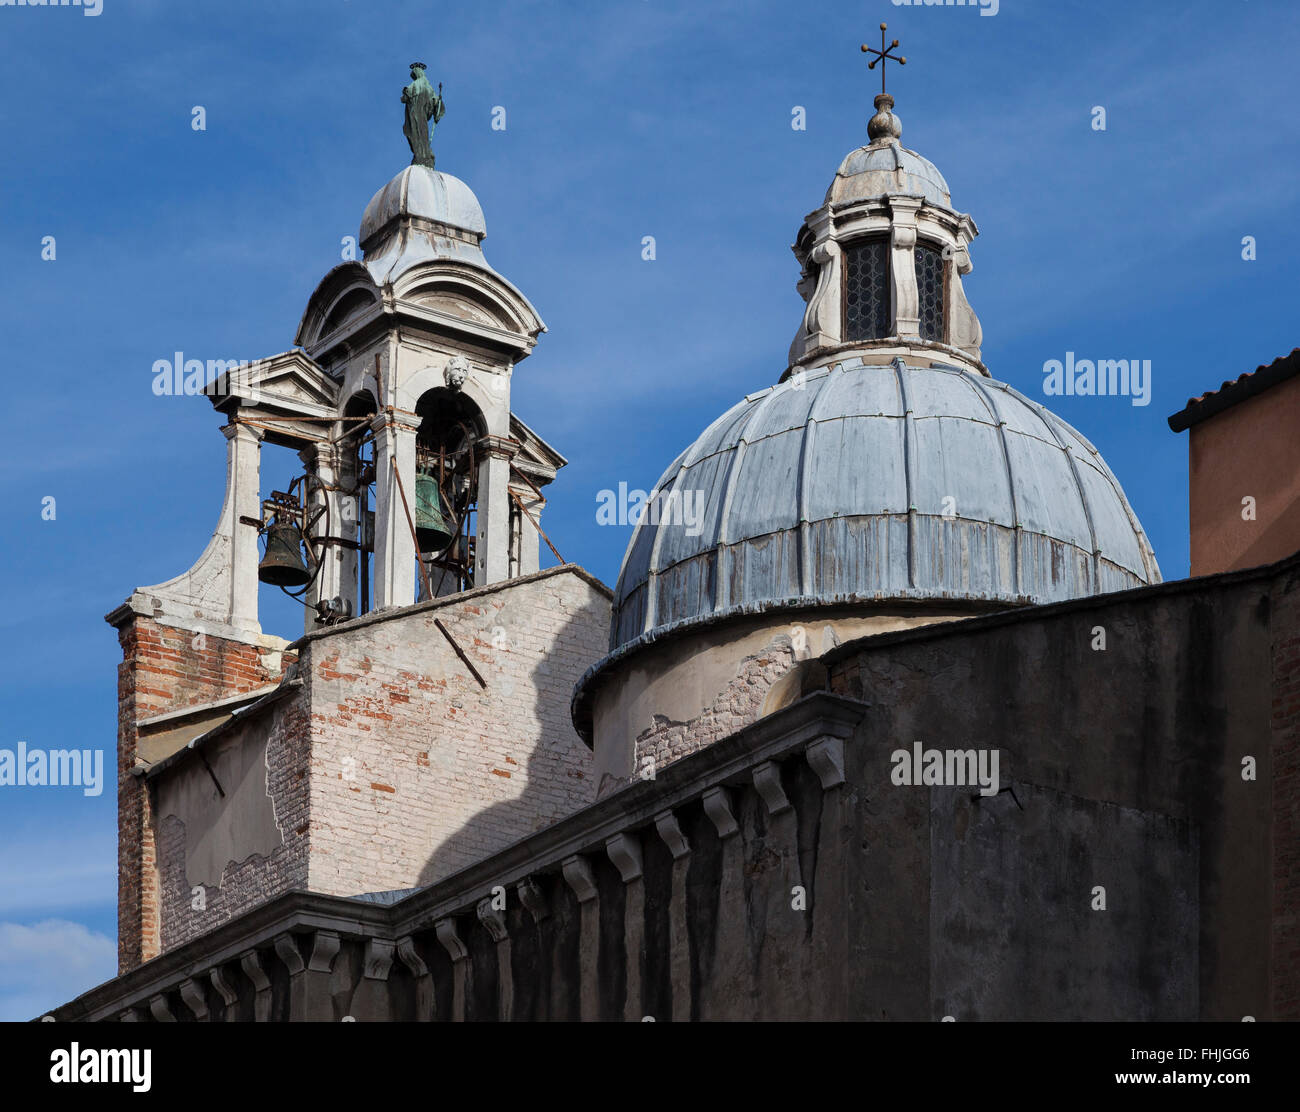 Clocher orné lumineux avec mécanisme d'horloge complexe visible et coupole de Chiesa di San Giacomo di Rialto, Venise, Italie sous un ciel bleu Banque D'Images